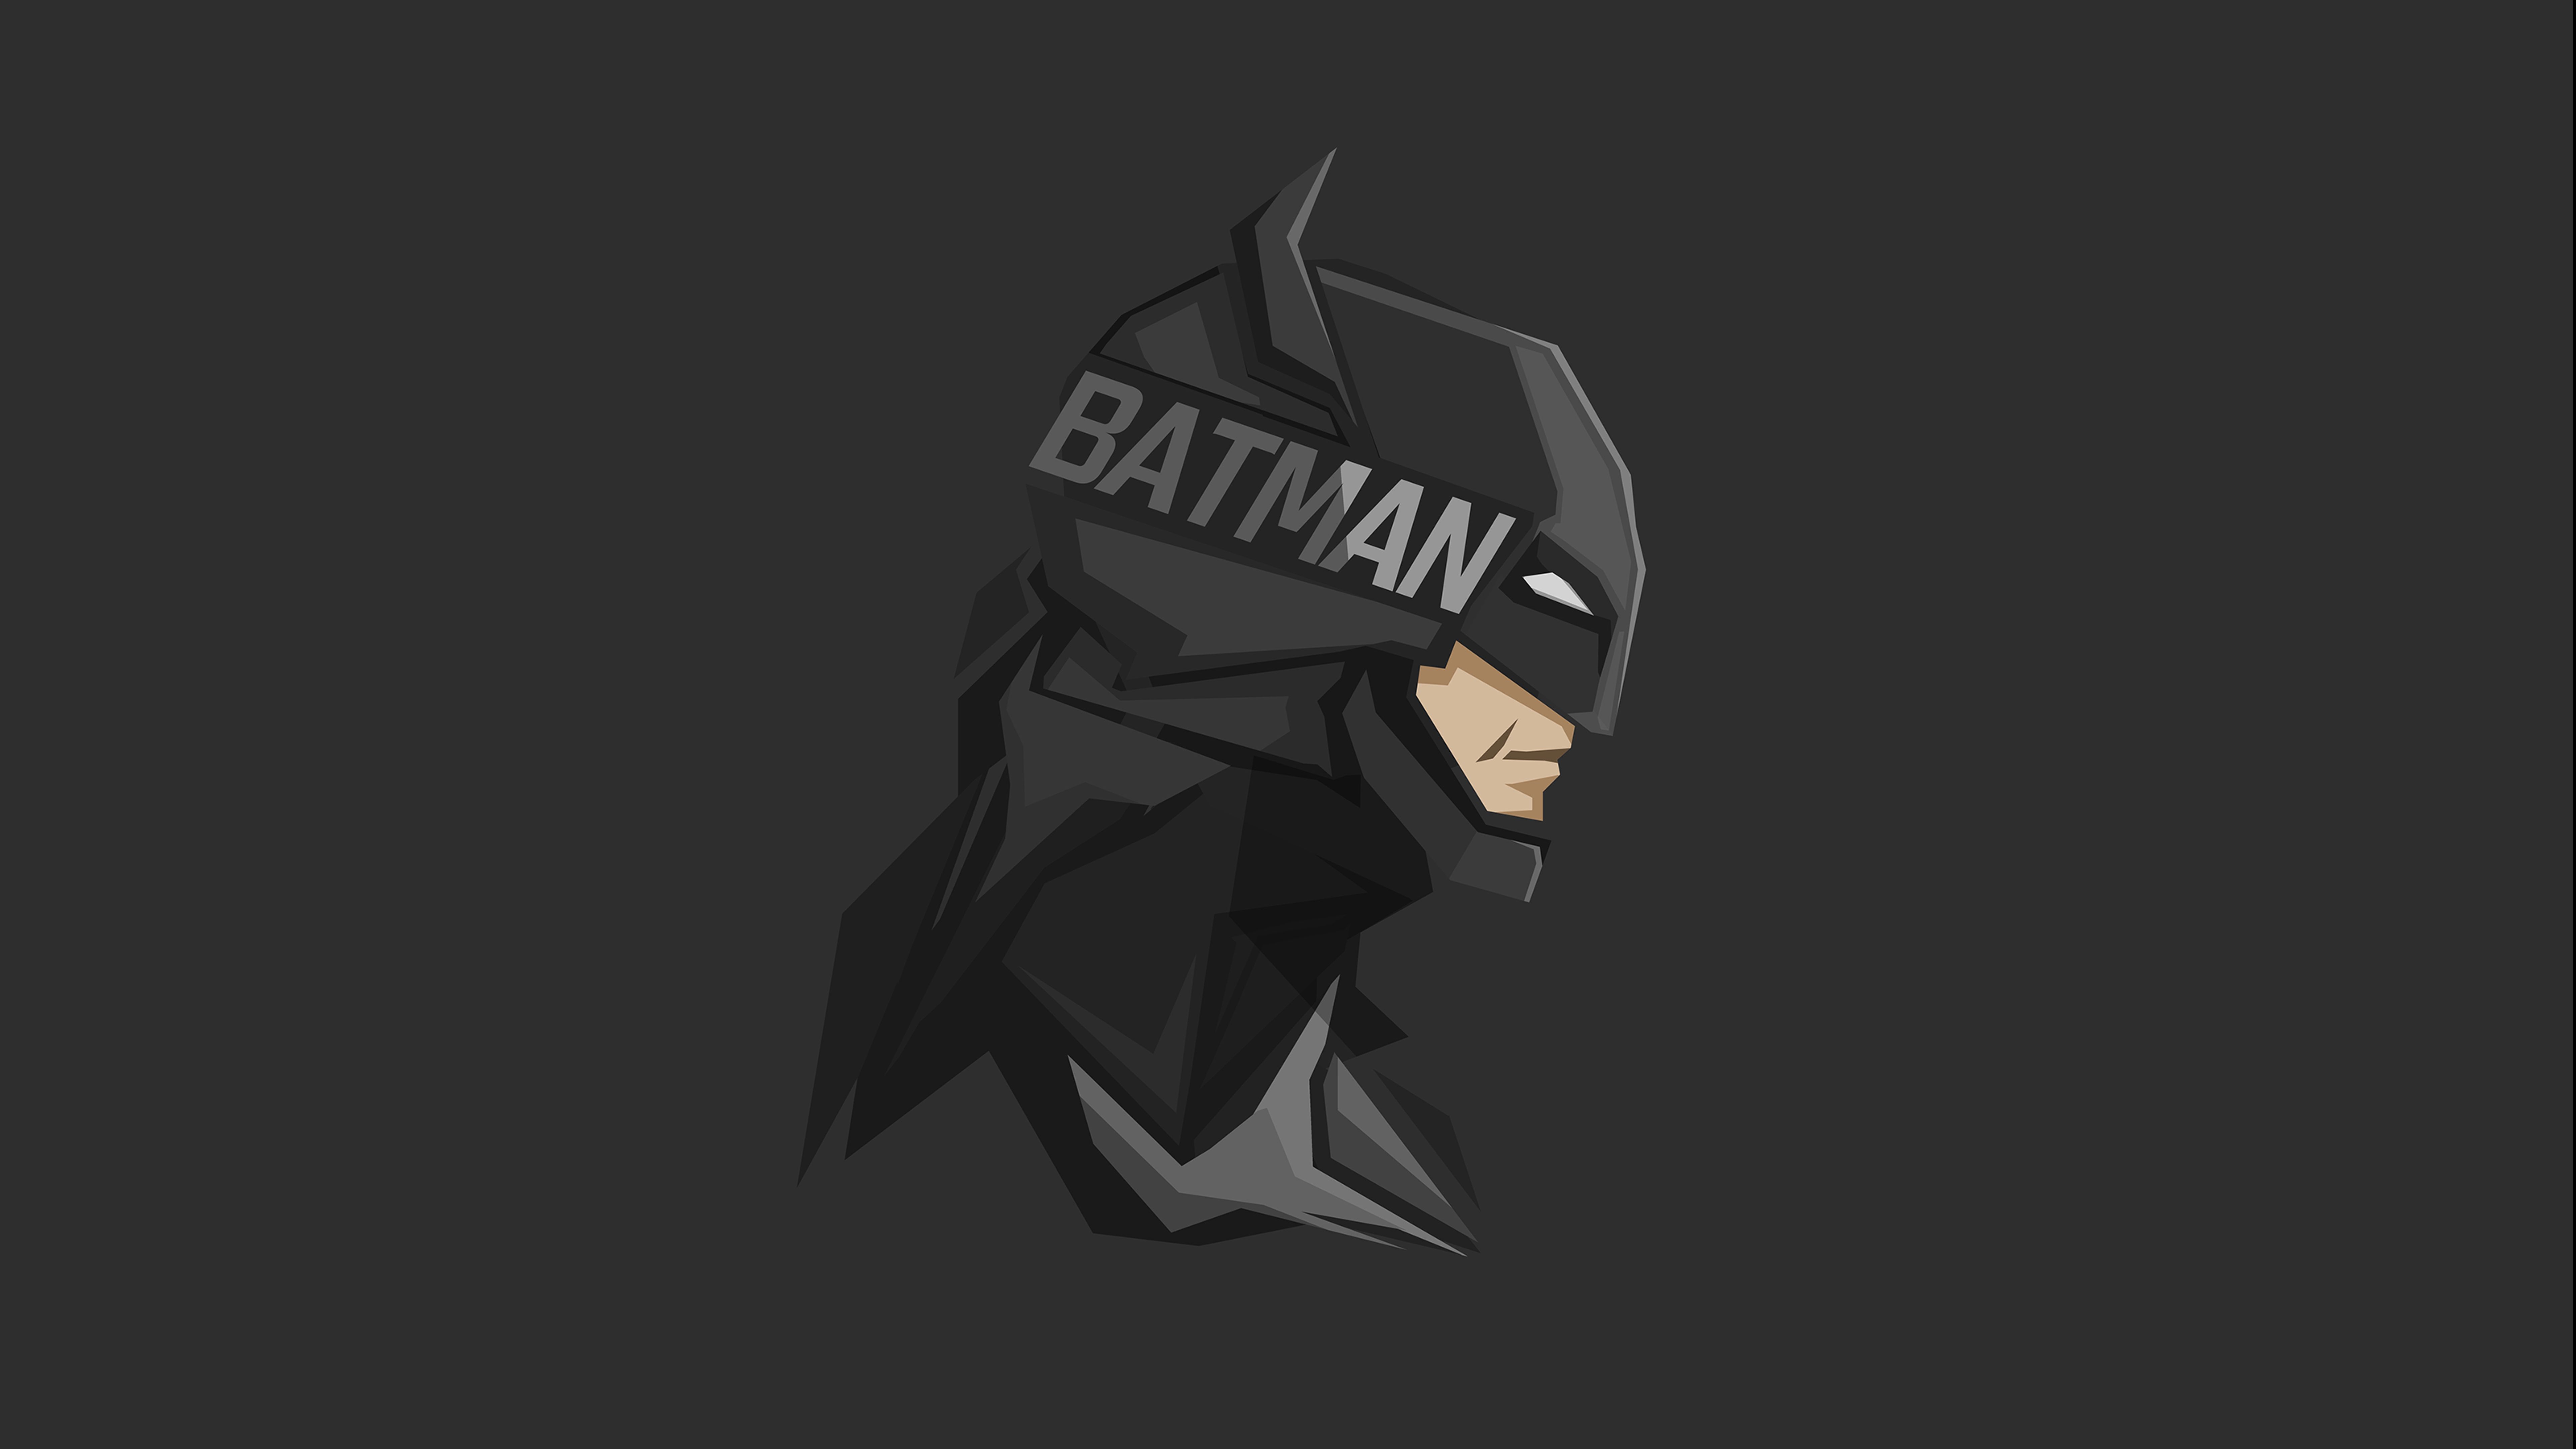  Batman HQ Background Images